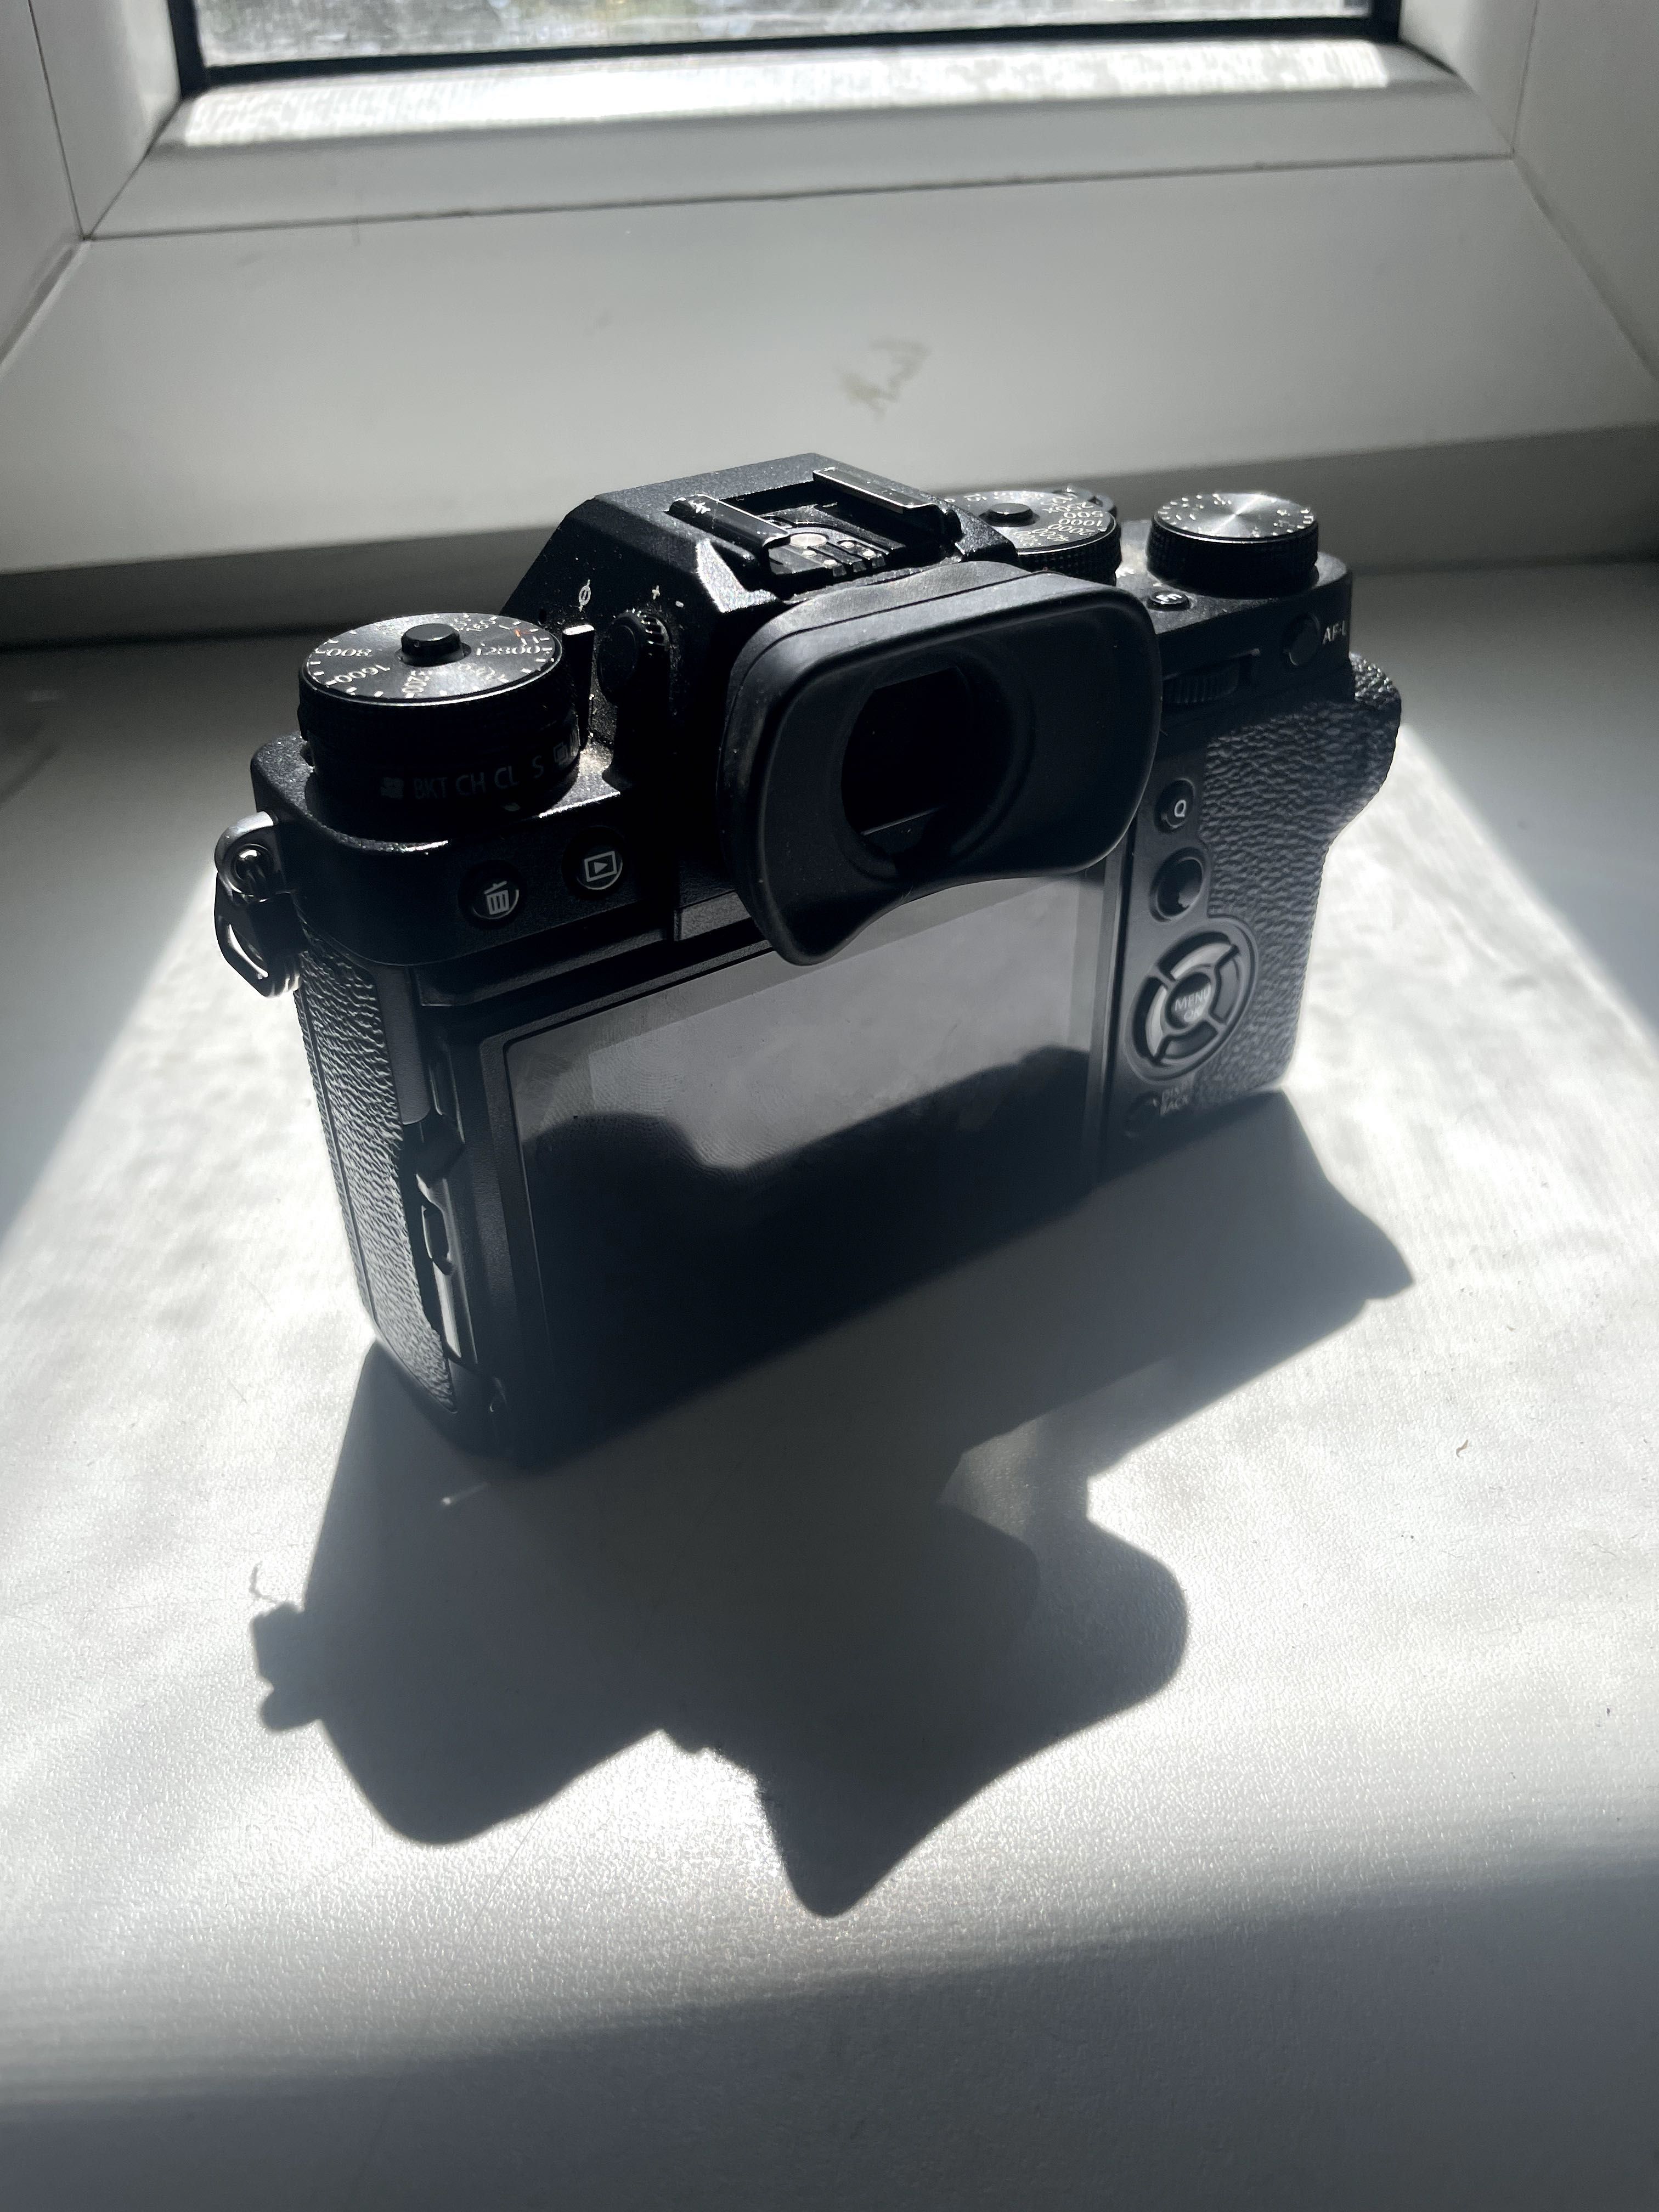 Фотокамера Fujifilm XT-3 18-55mm + батарейный блок и клетка.